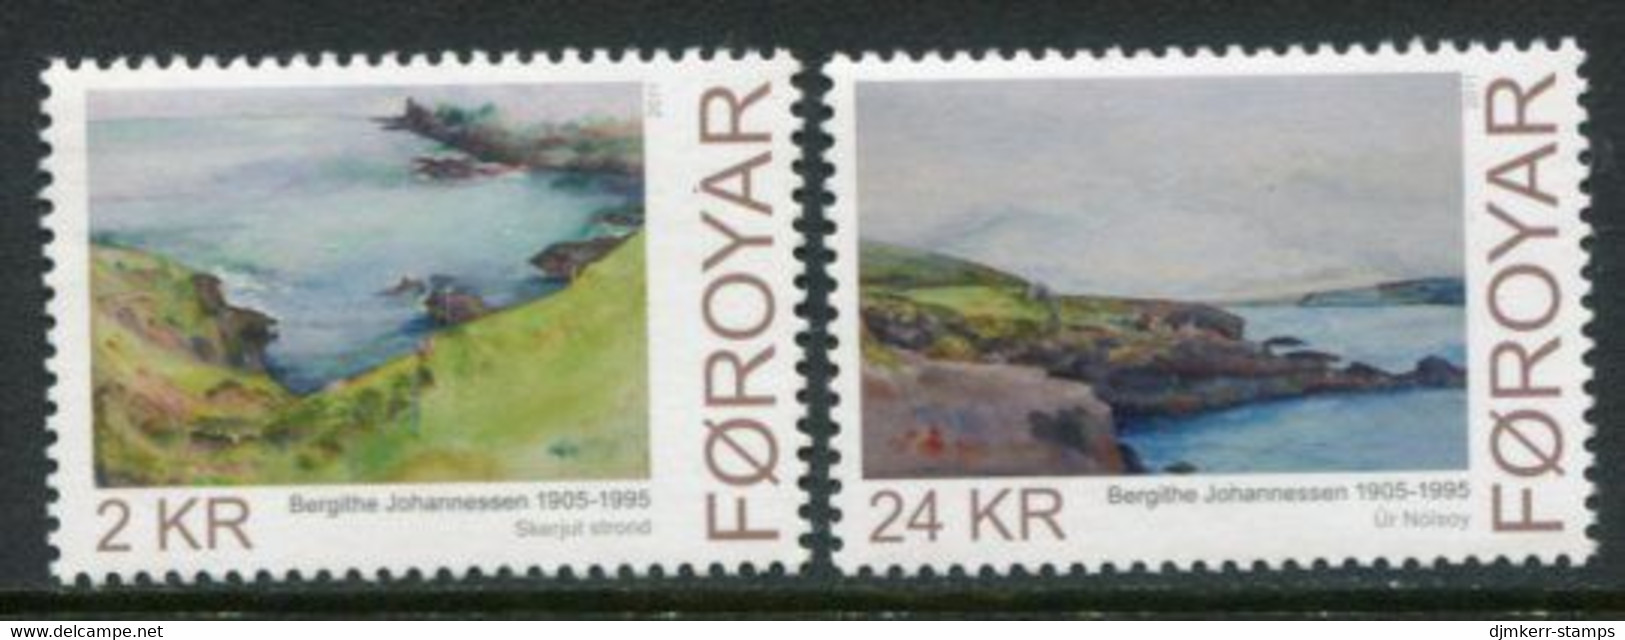 FAEROE ISLANDS 2011 Johannessen Paintings MNH / **.  Michel 726-27; SG 636-37 - Faroe Islands